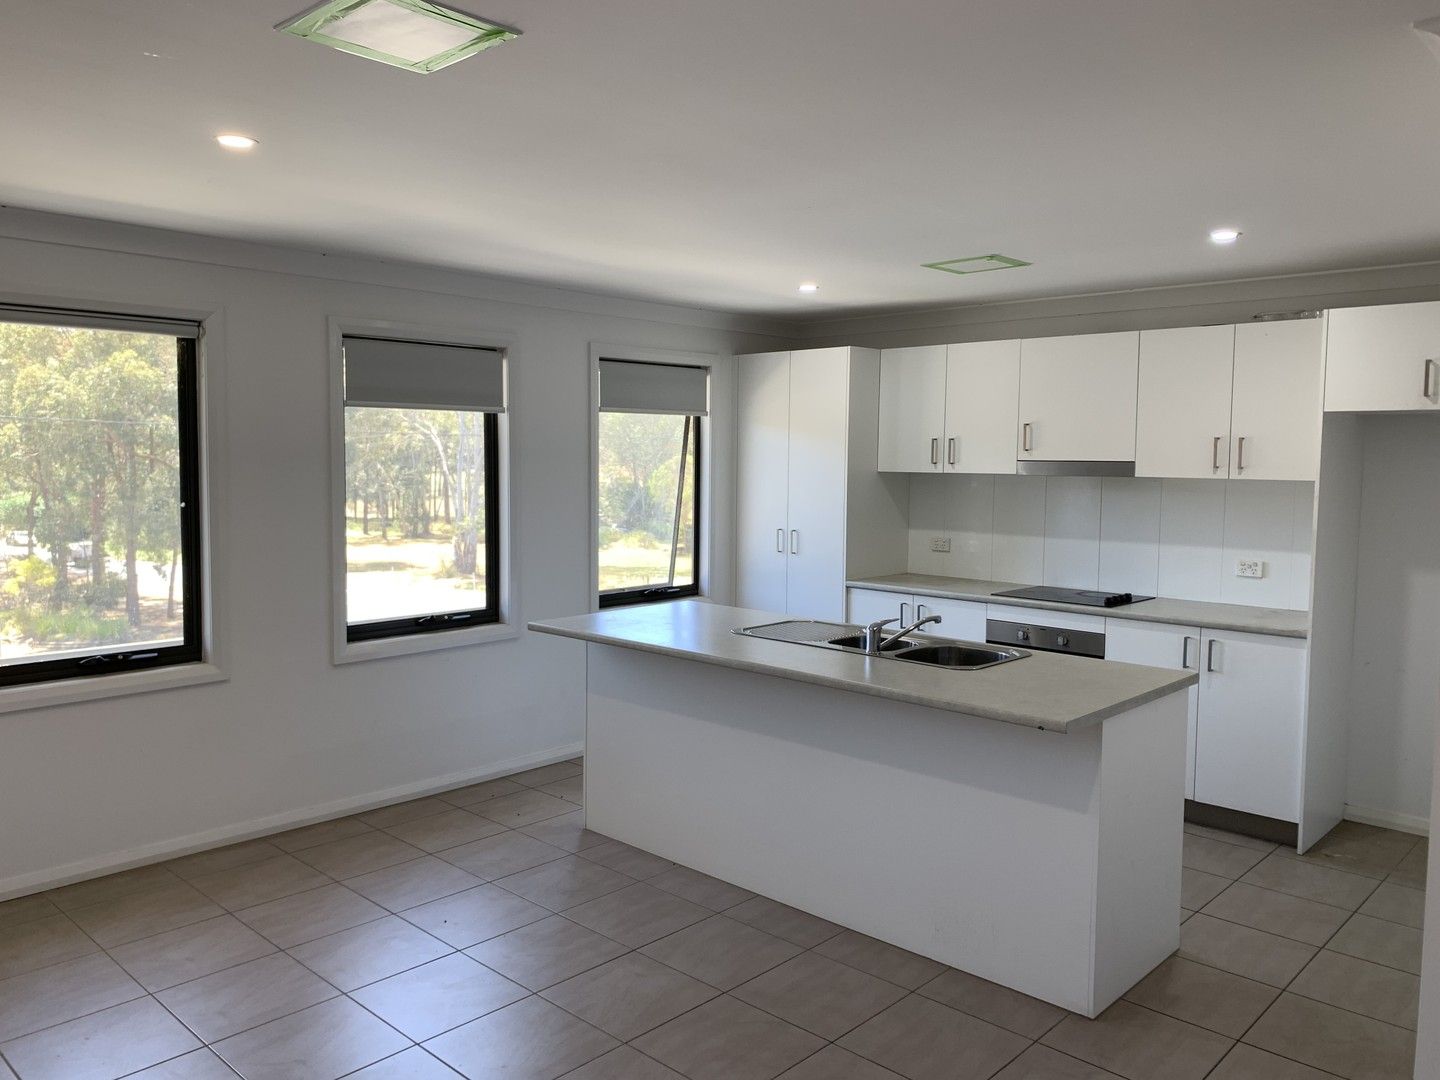 3 bedrooms Apartment / Unit / Flat in 280 Edmondson Avenue AUSTRAL NSW, 2179